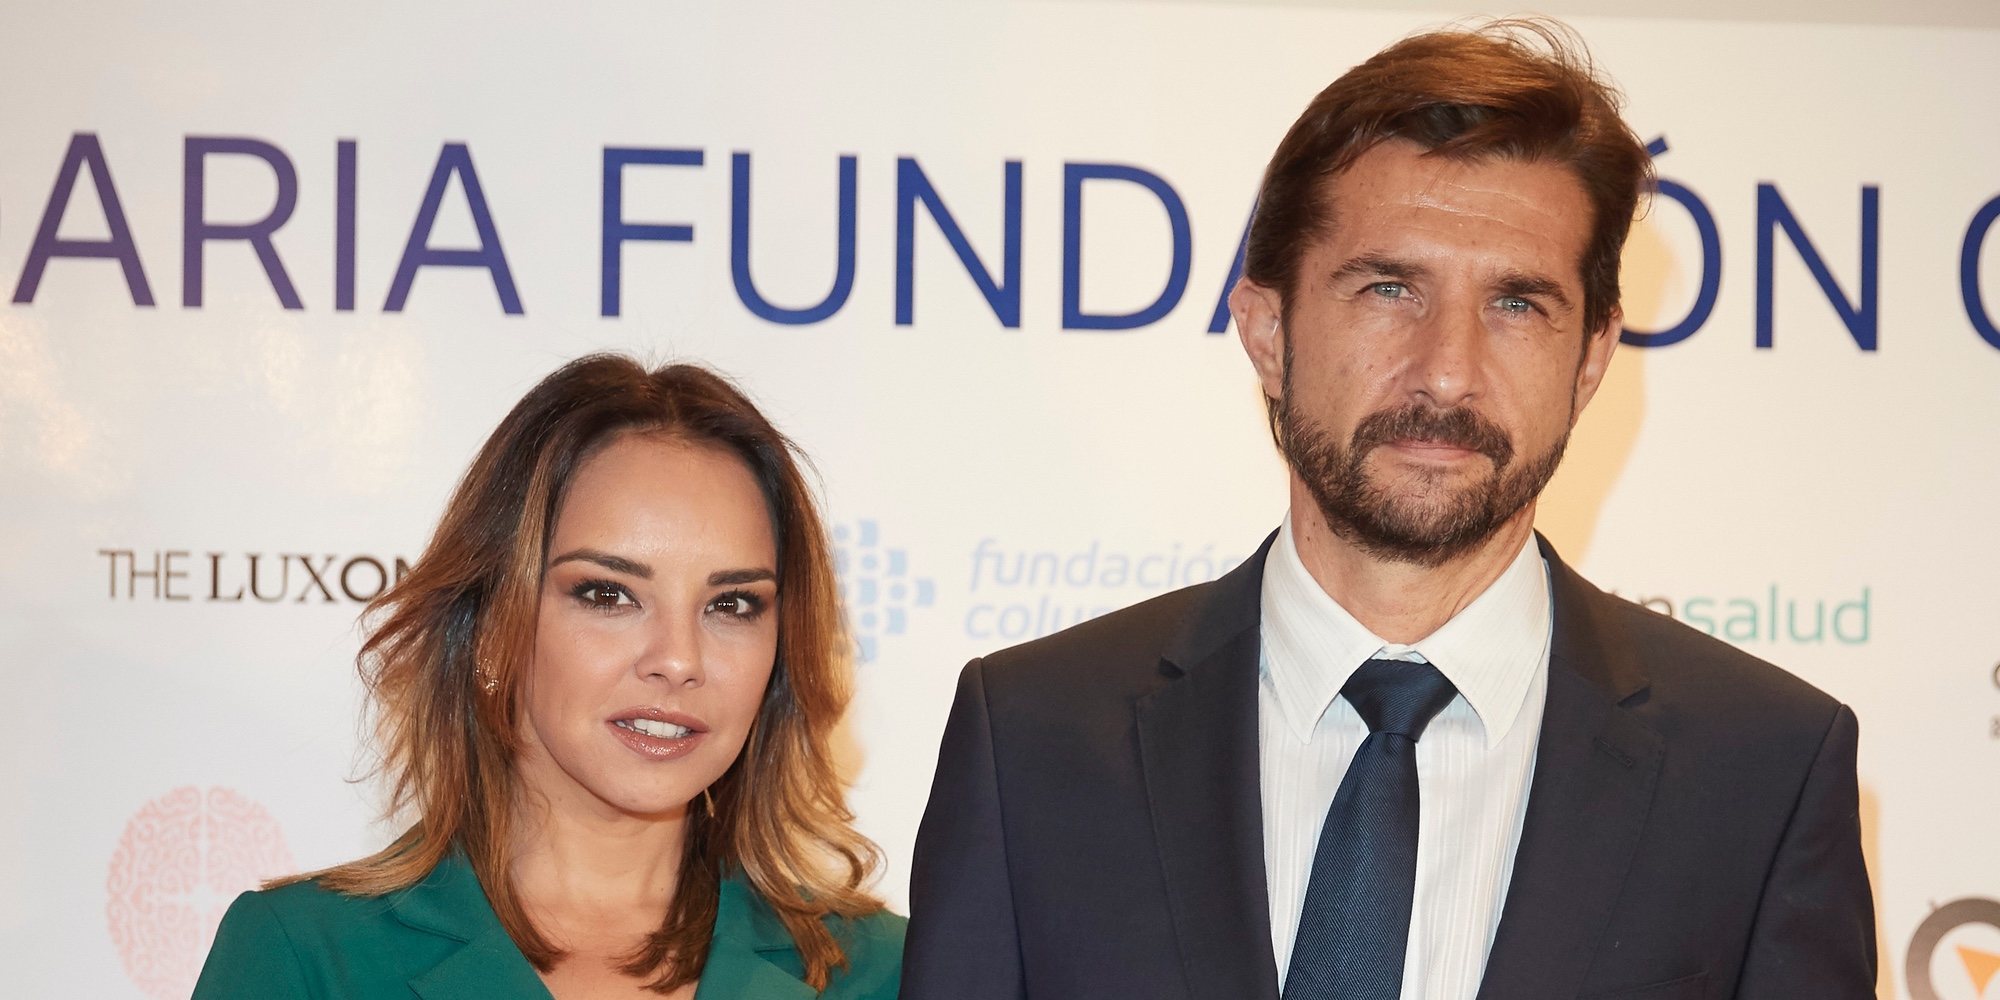 Chenoa busca fecha para casarse con Miguel Sánchez Encinas: "Estamos cuadrando agendas"